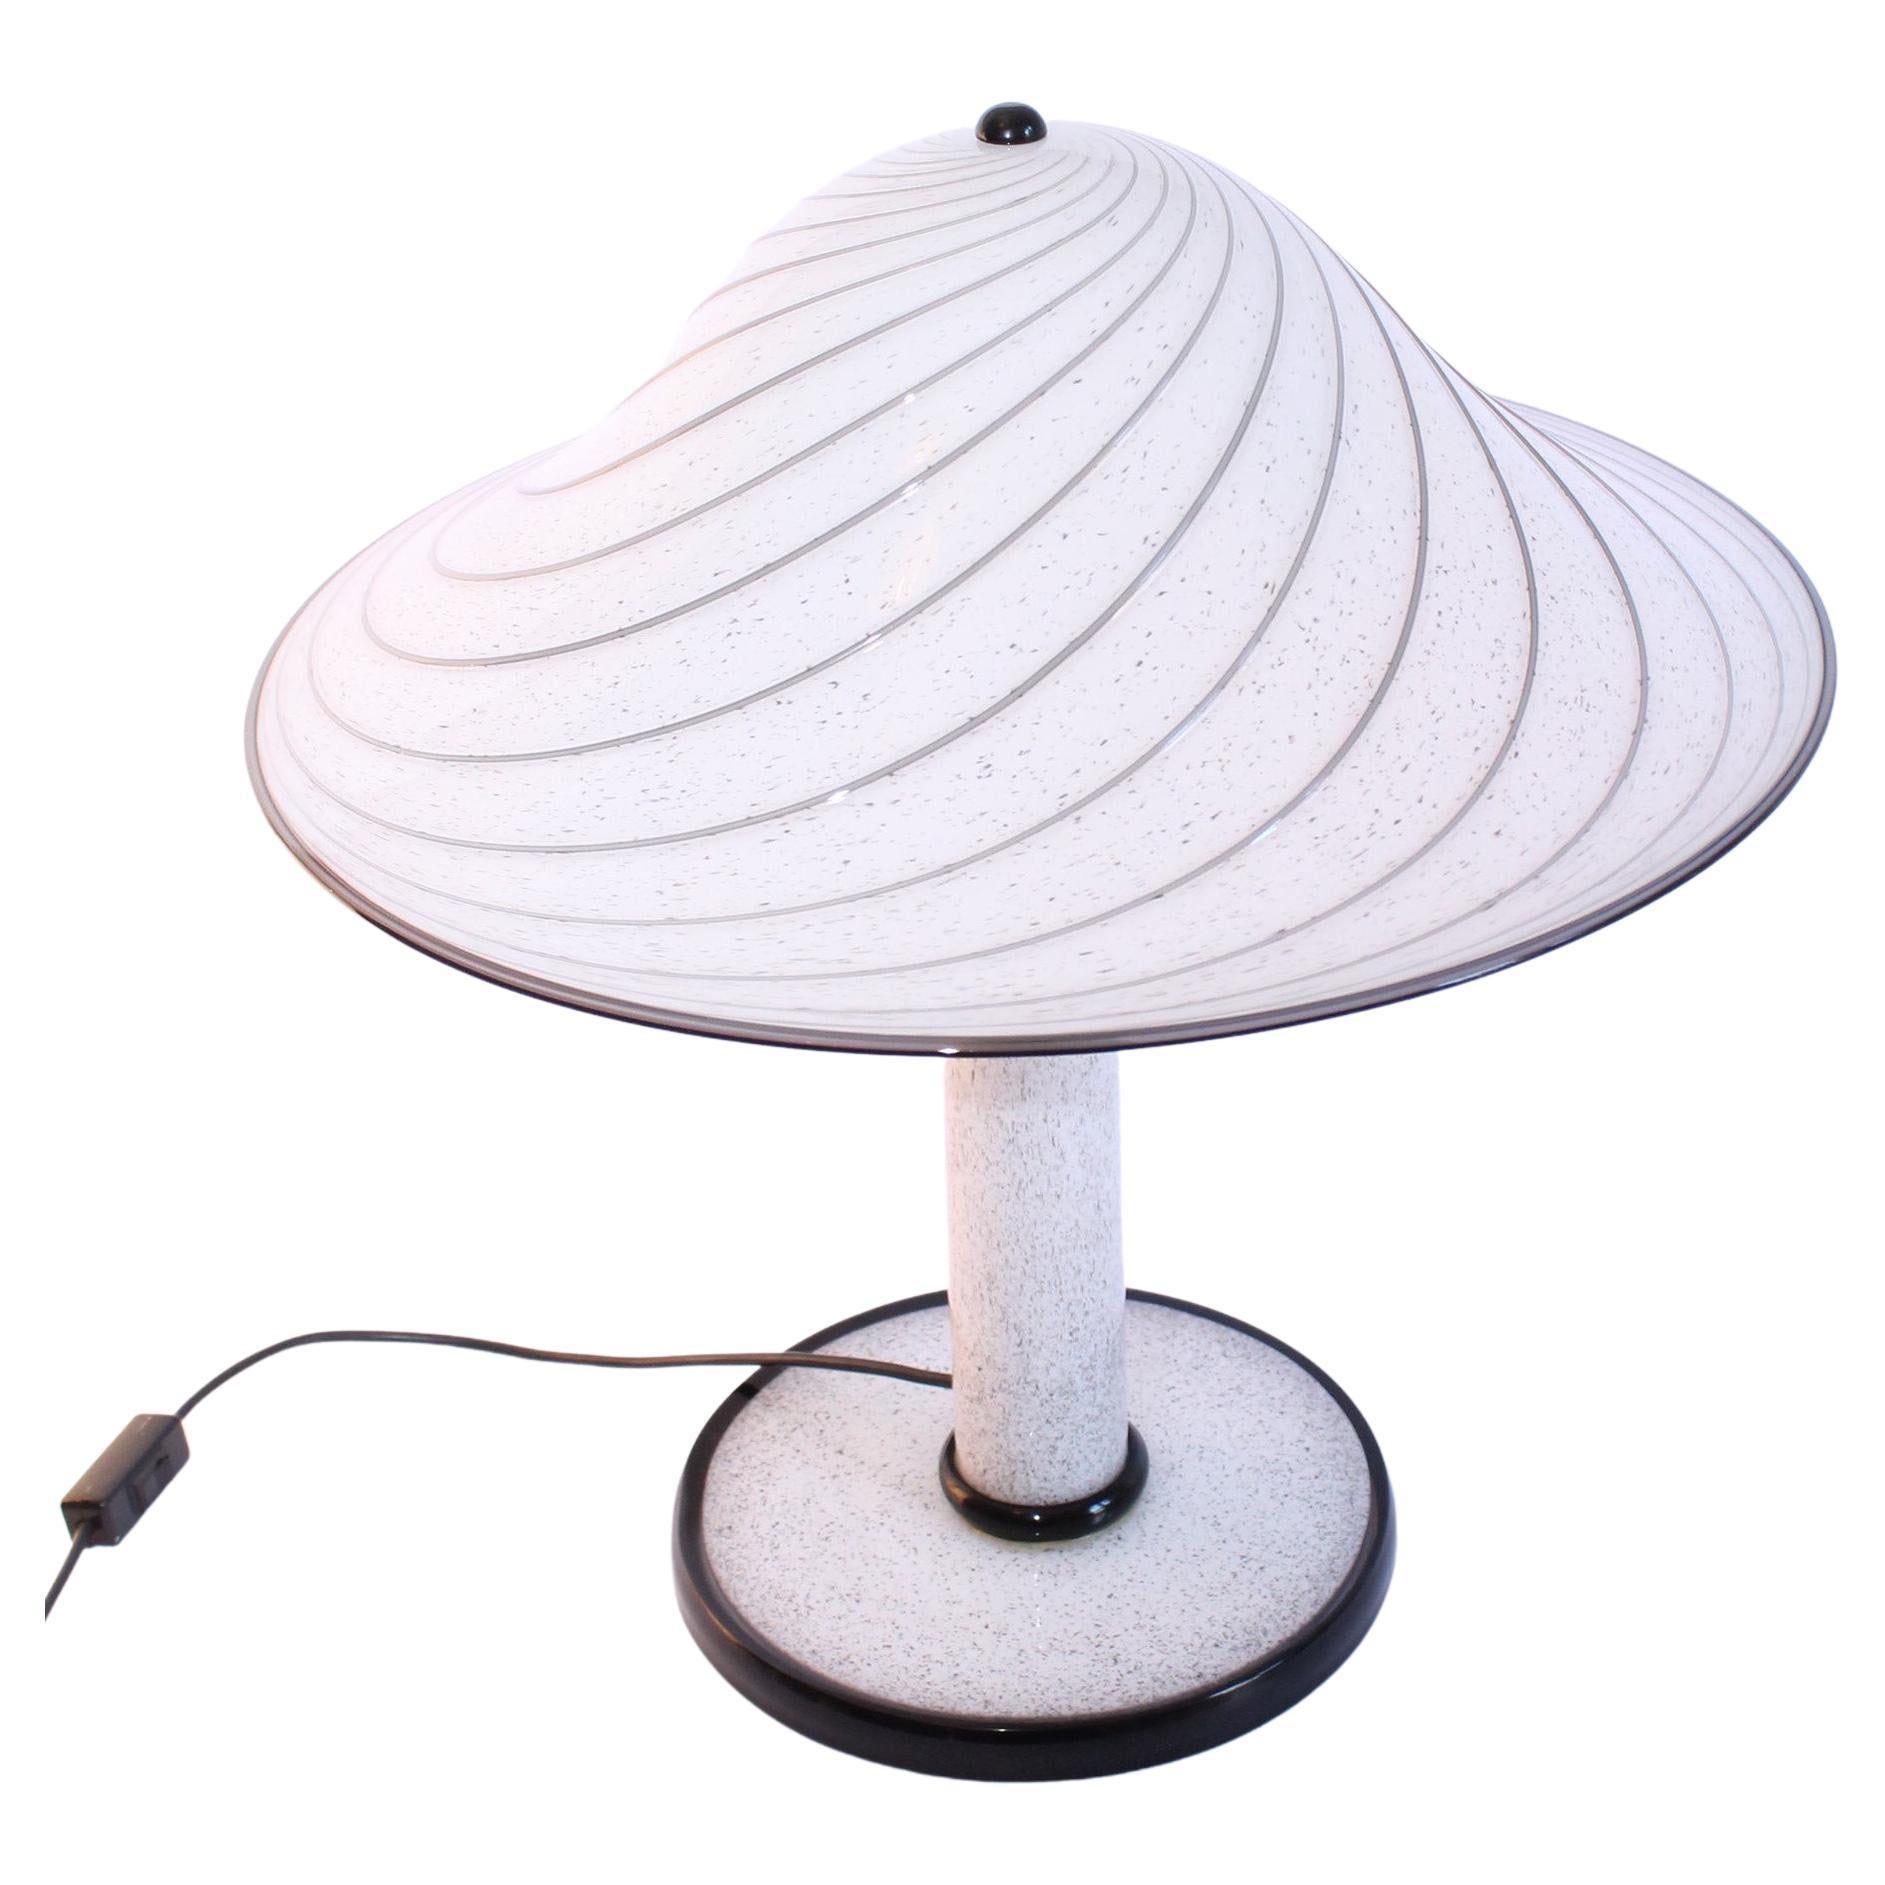 Lino Tagliapietra for Effetre Murano, Iconic '1979' Table Lamp